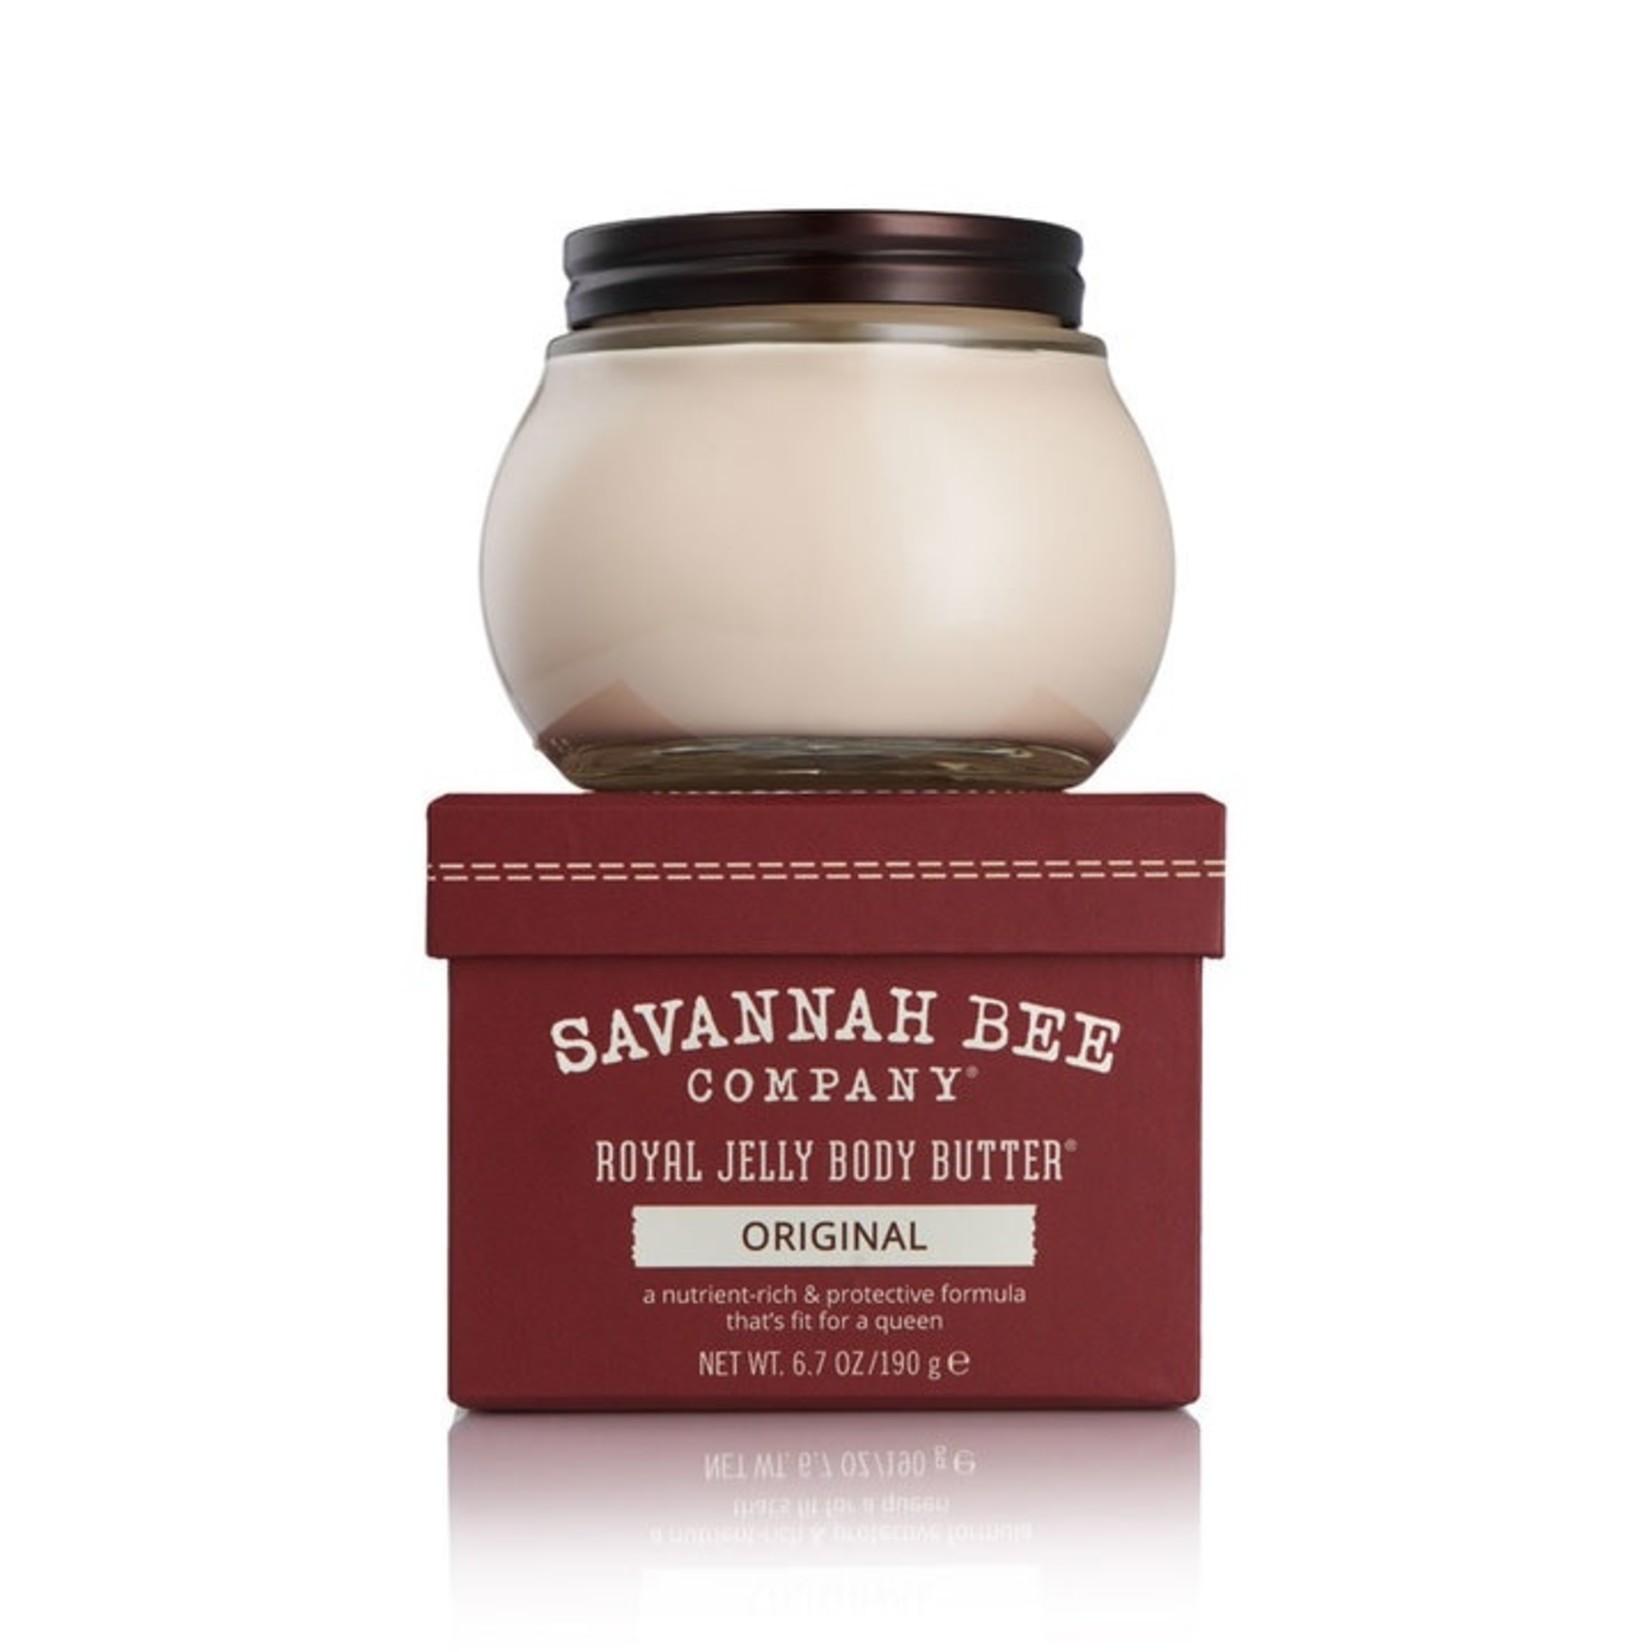 Savannah Bee Company Royal Jelly Body Butter®